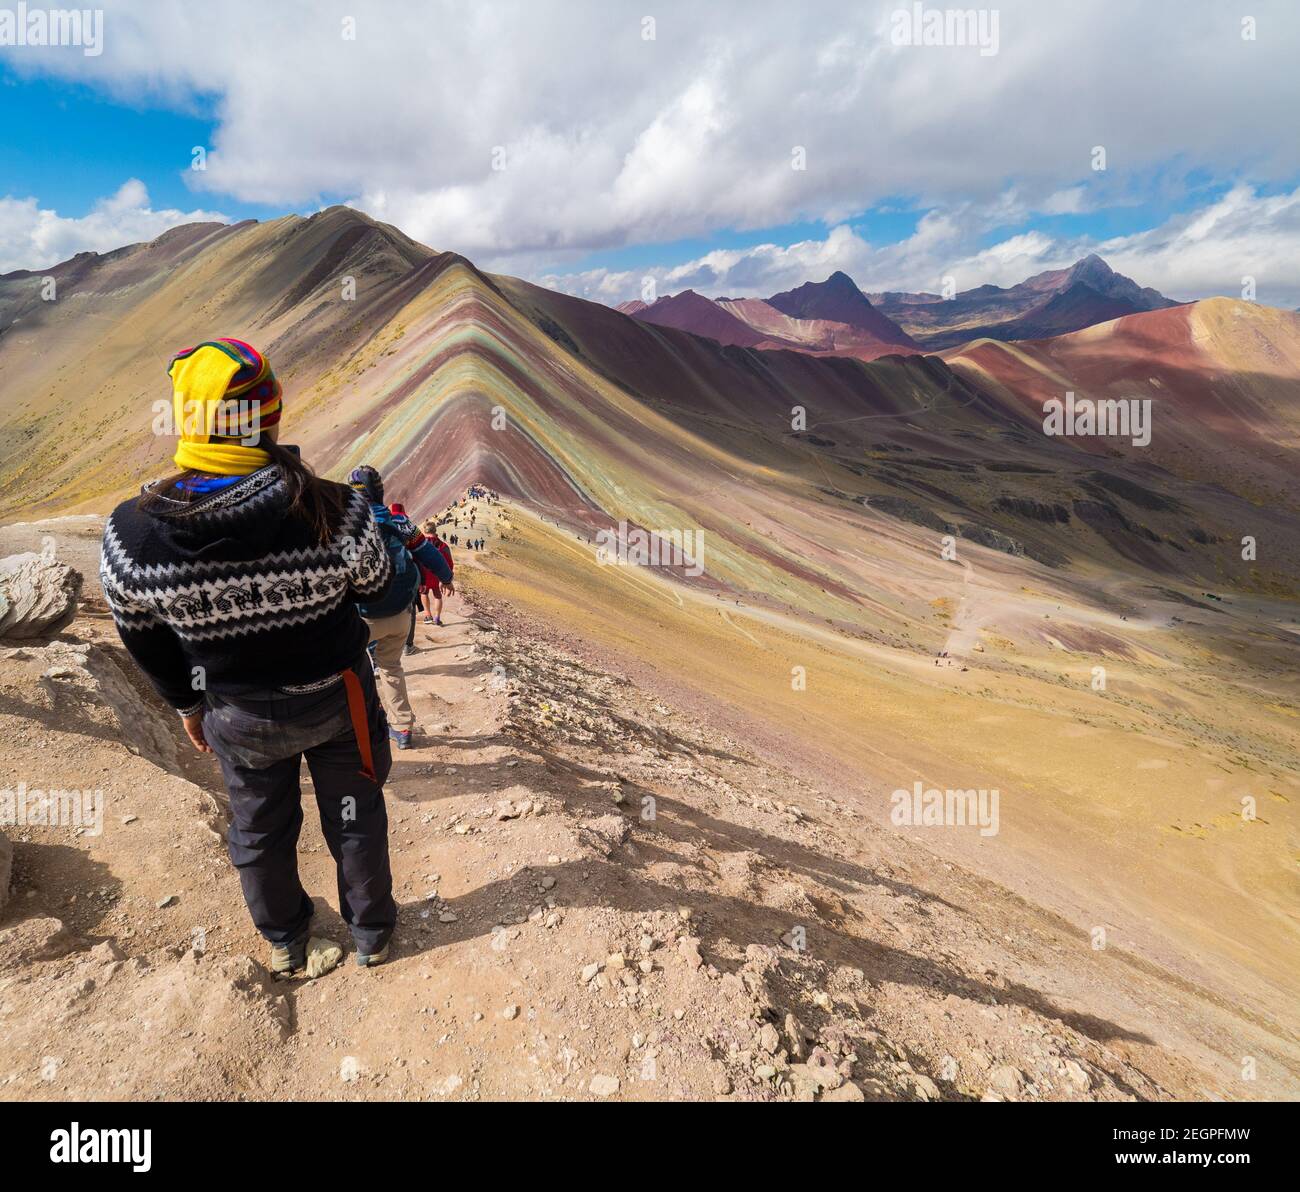 Perù, Vinicunca - 27 settembre 2019 - l'uomo in abiti indiani gode della vista della montagna arcobaleno, cappello giallo Foto Stock